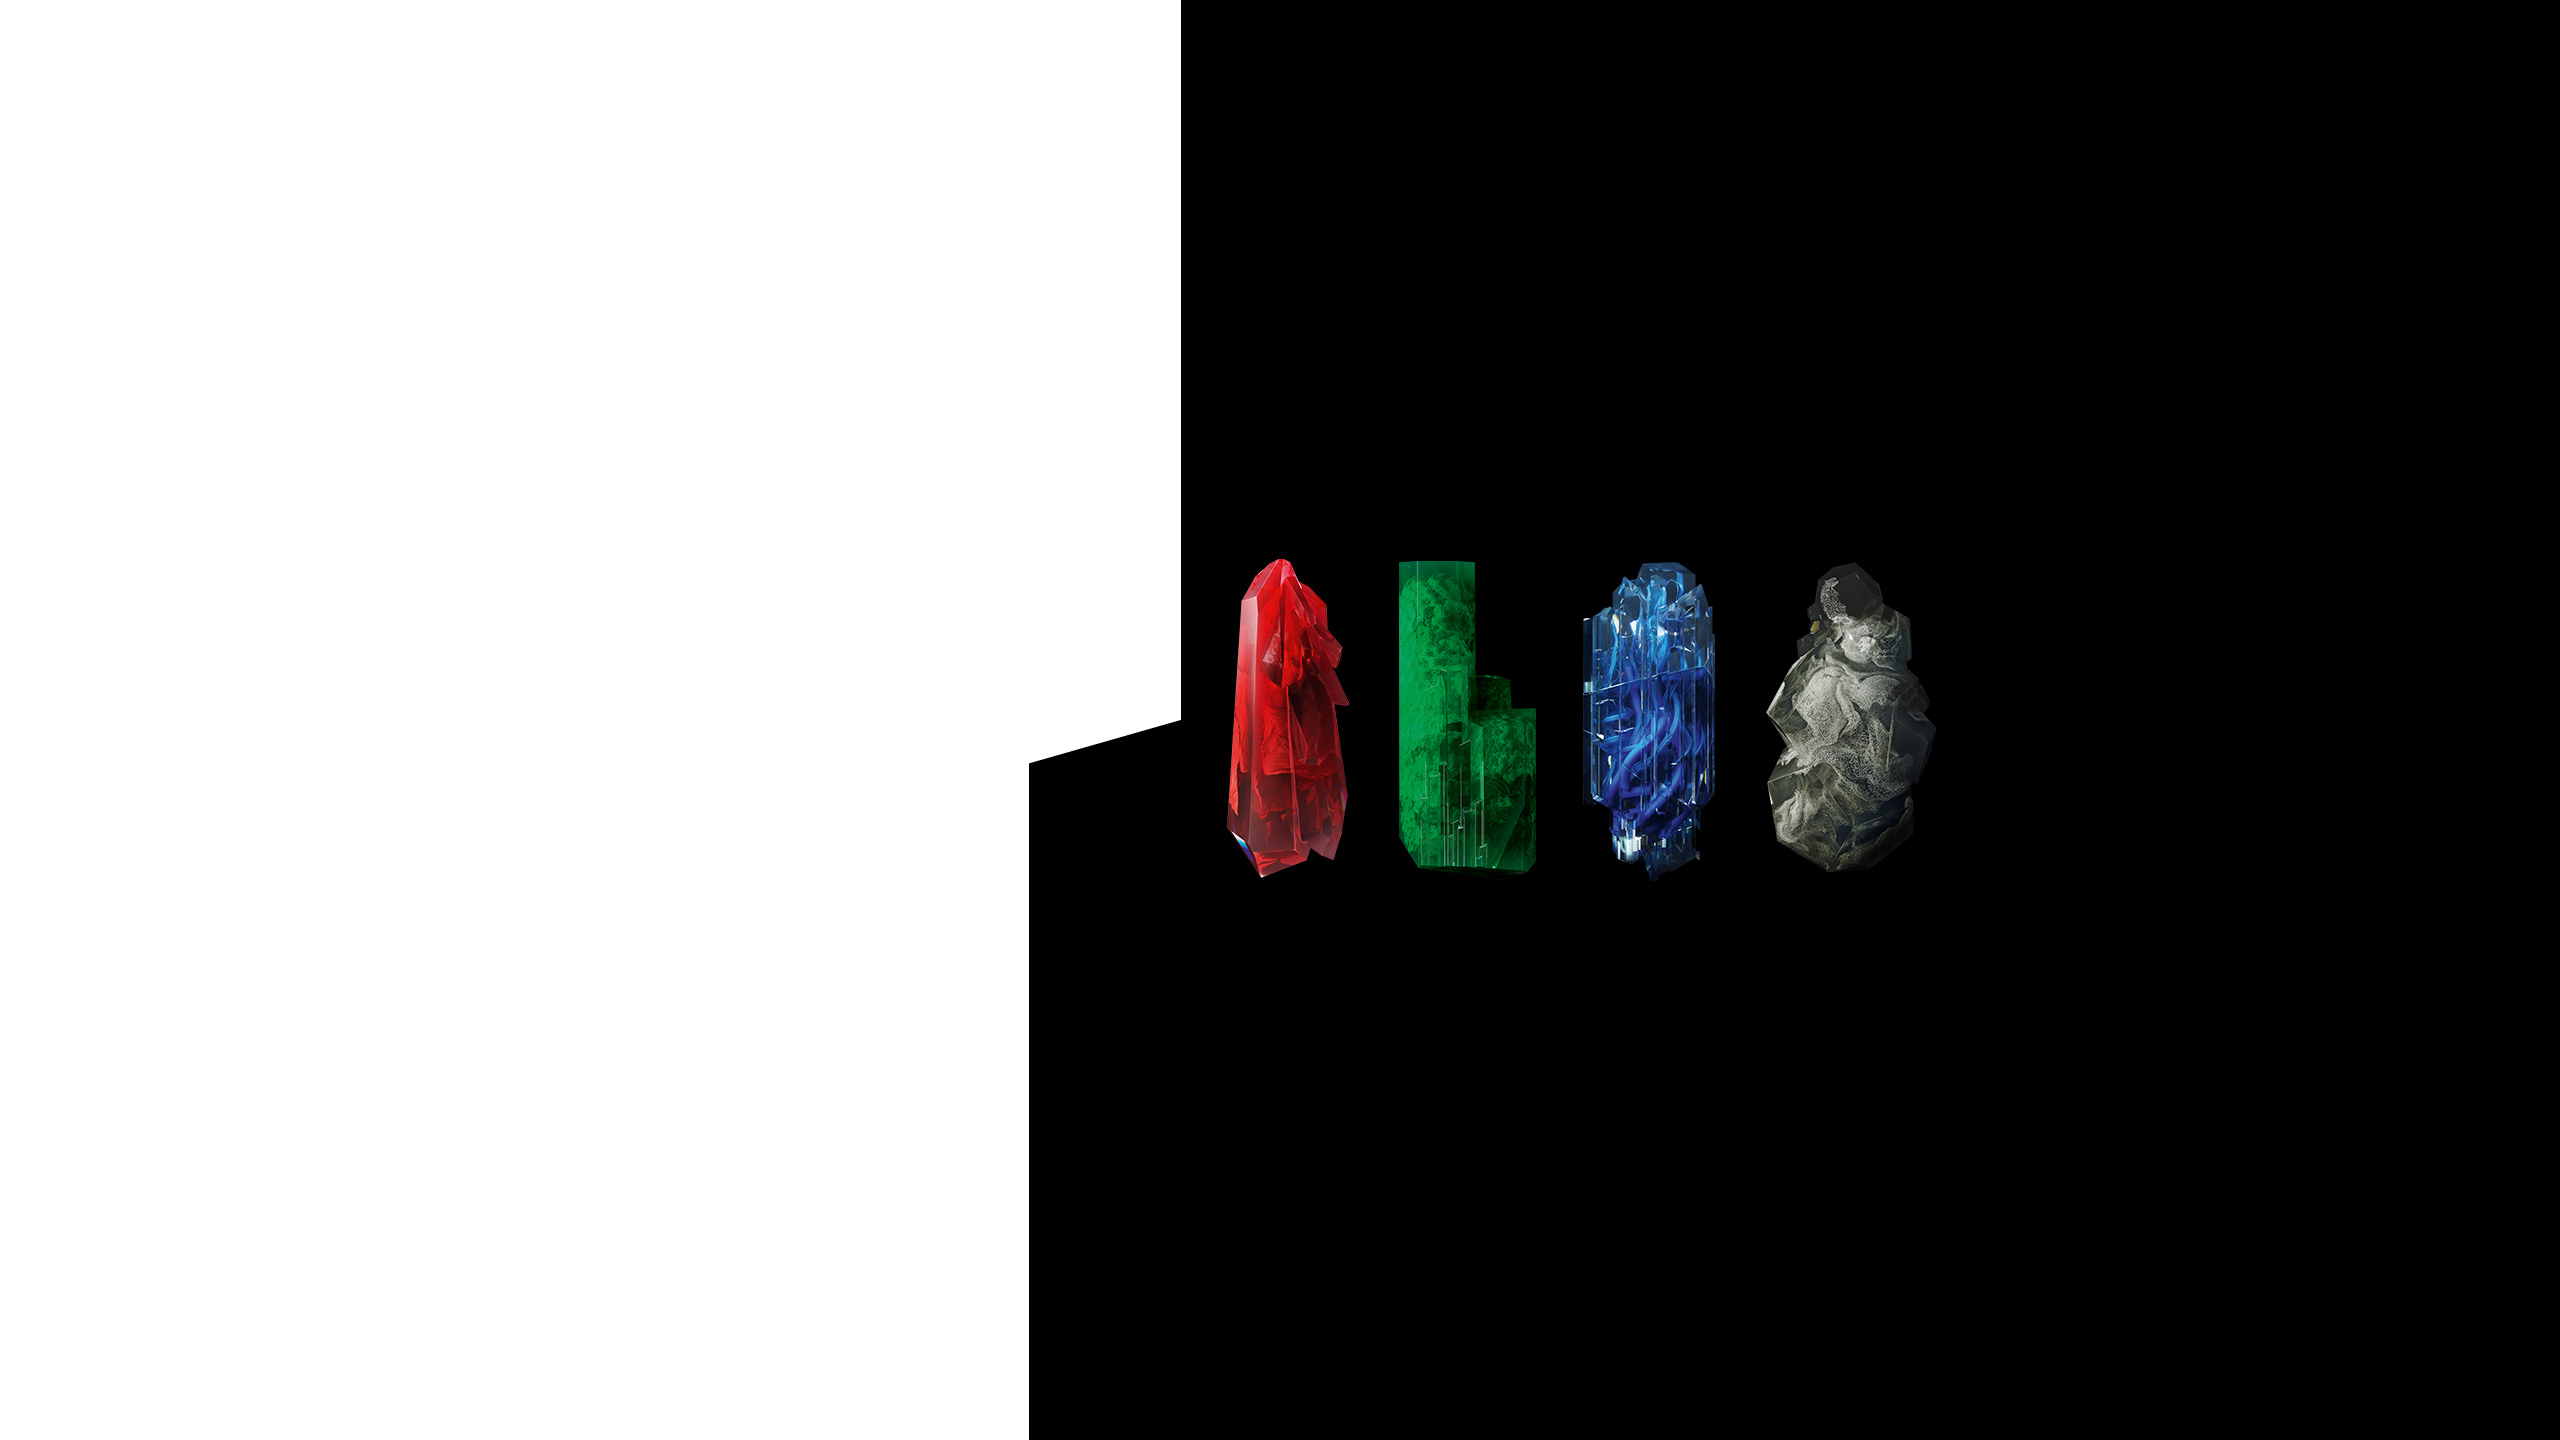 Vier Kristalle in den Farben rot, grün, blau und silber vor einem schwarzen Hintergrund